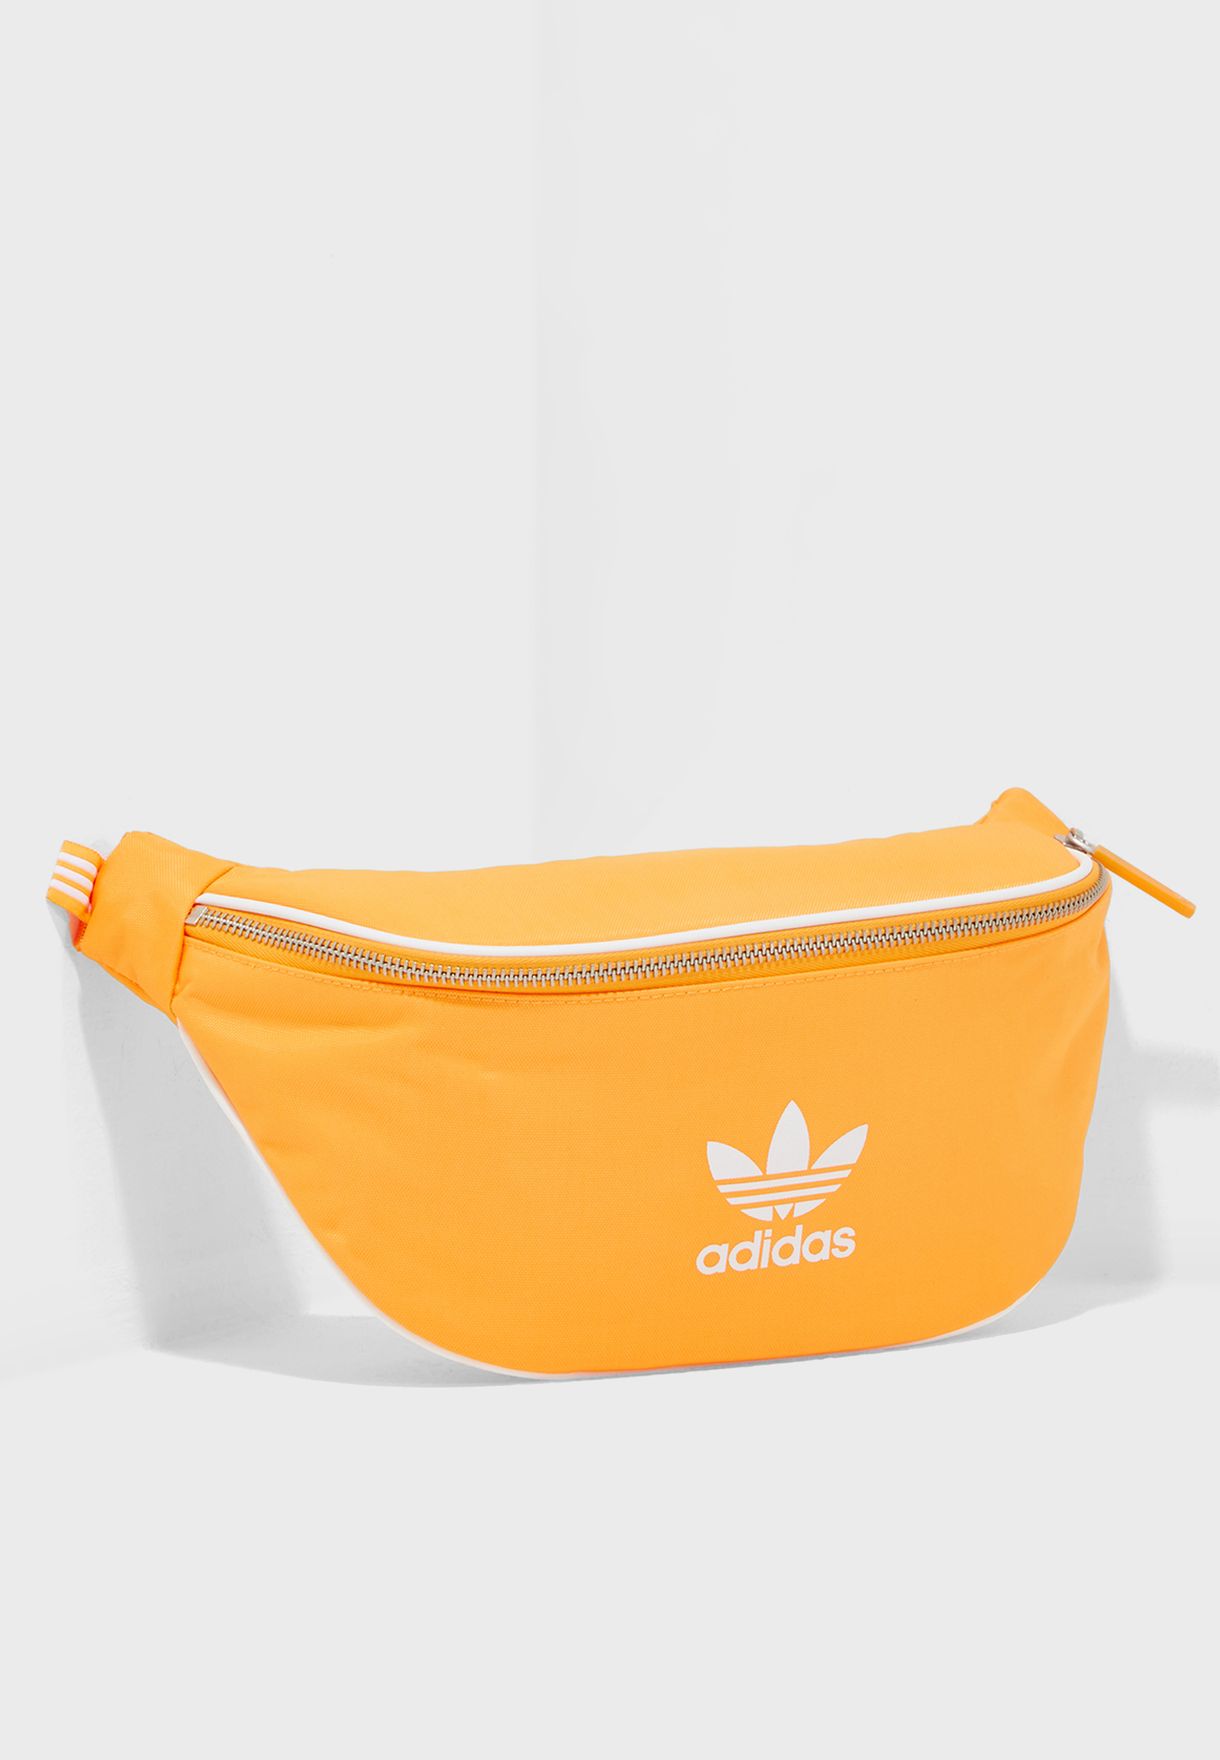 orange adidas fanny pack